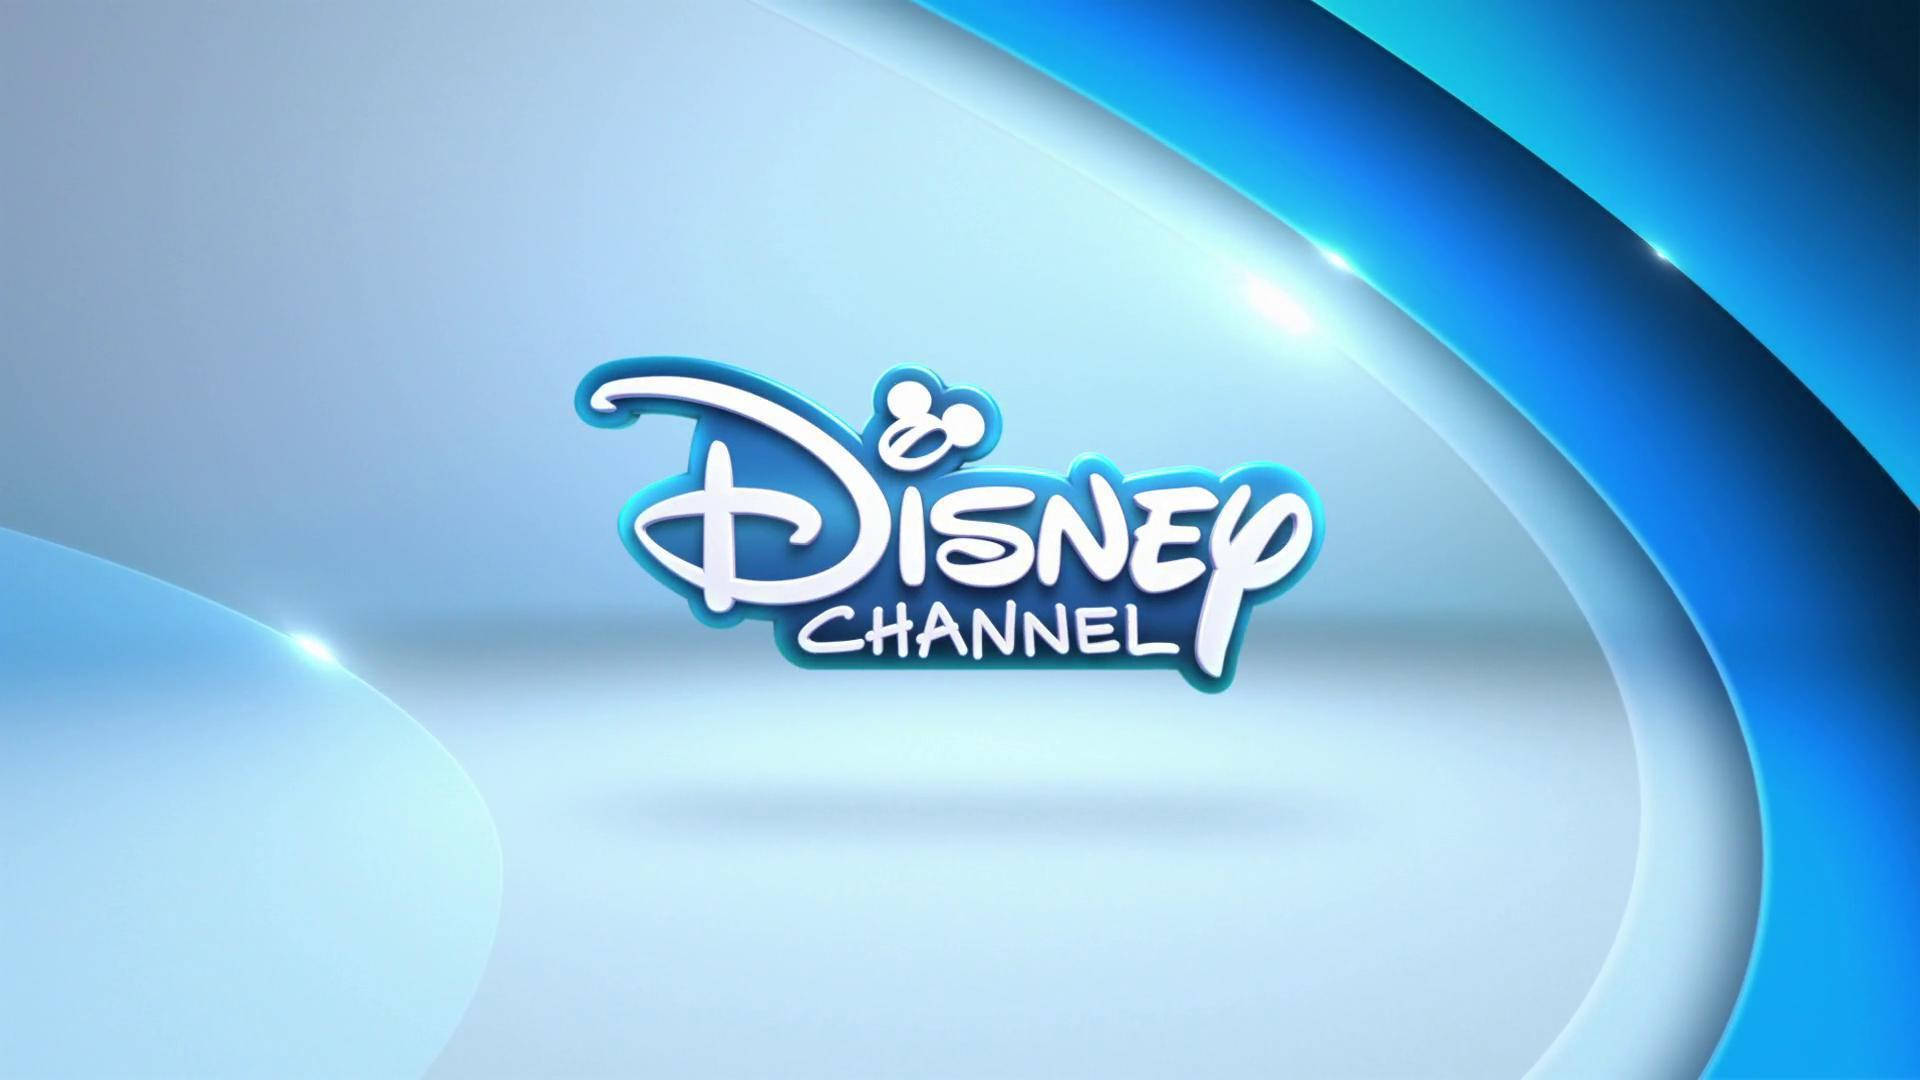 Disney XD gamle logo i blå Wallpaper